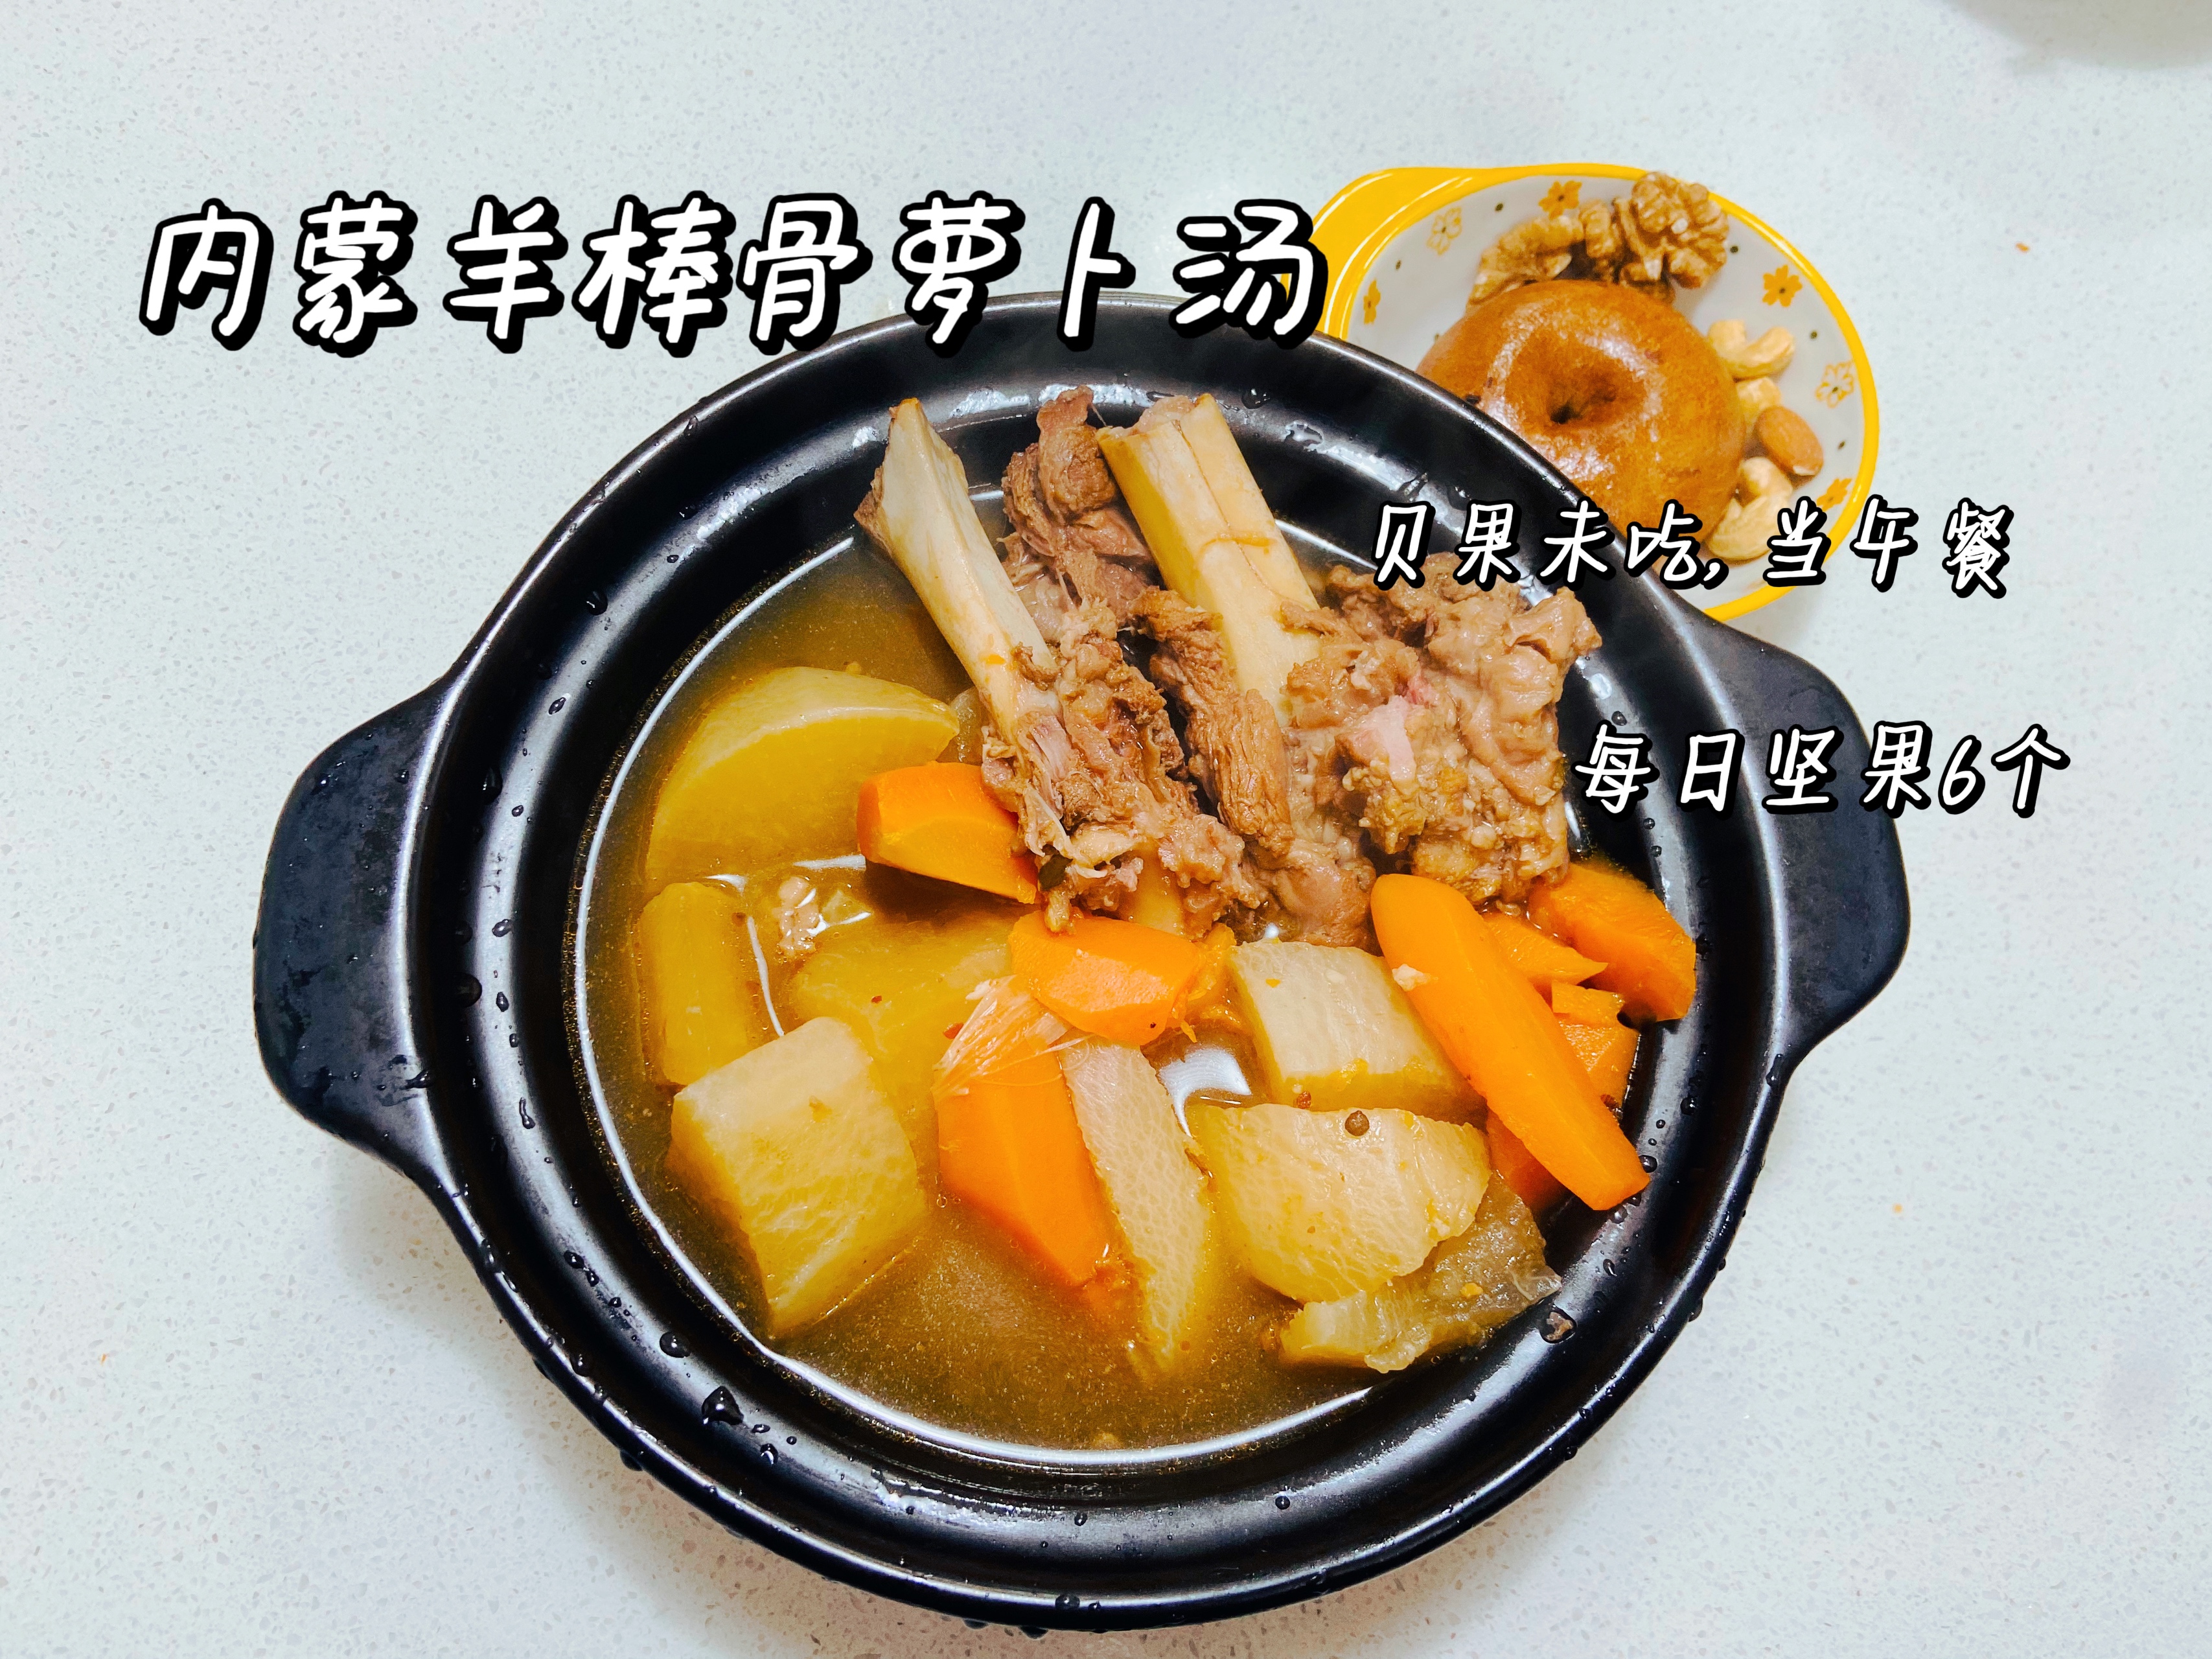 羊棒骨萝卜砂锅汤